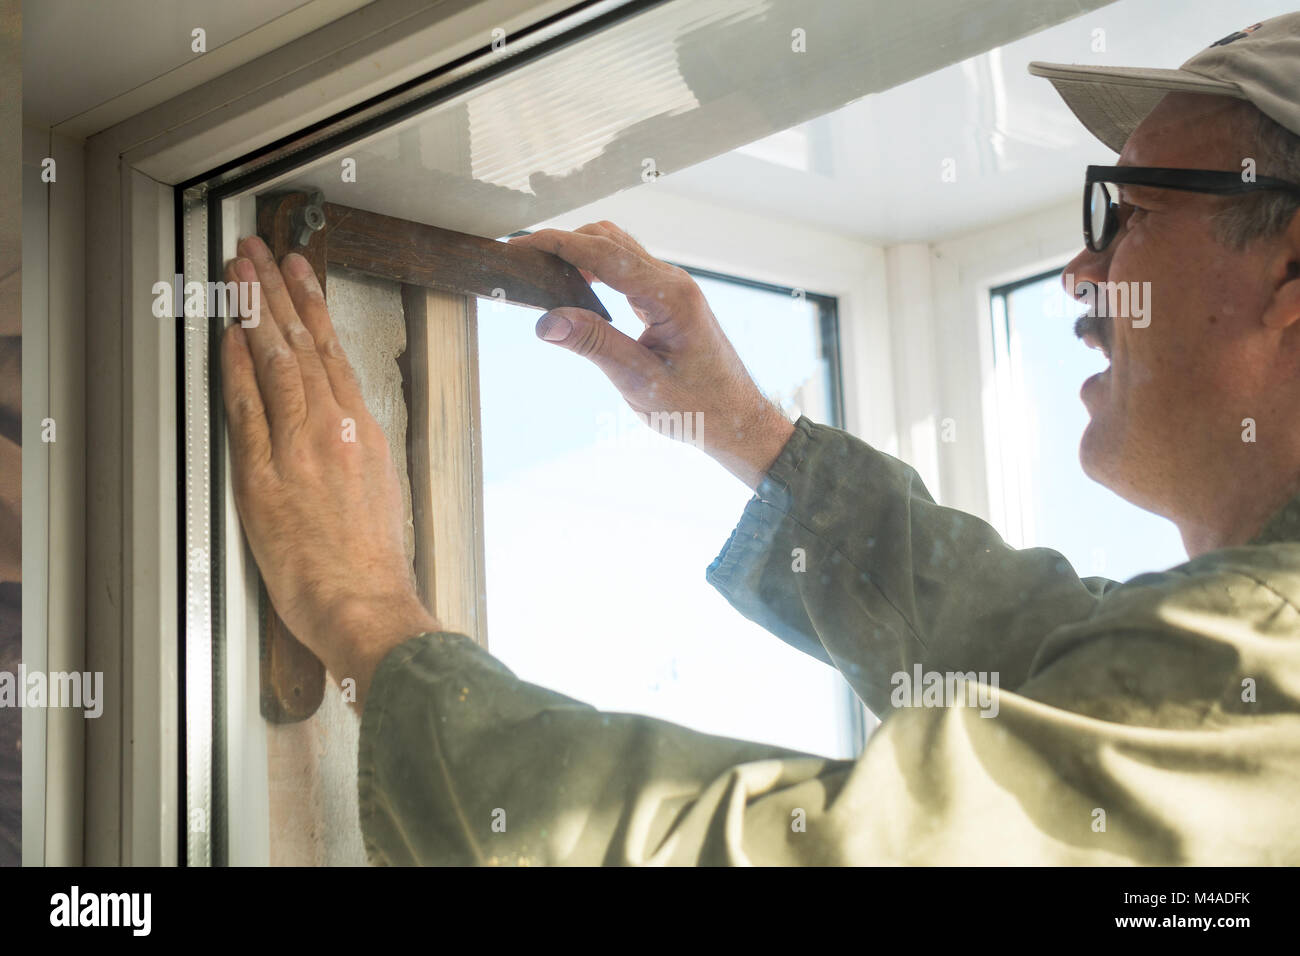 Carpentiere realizza misurazioni quando si installa la finestra Foto Stock